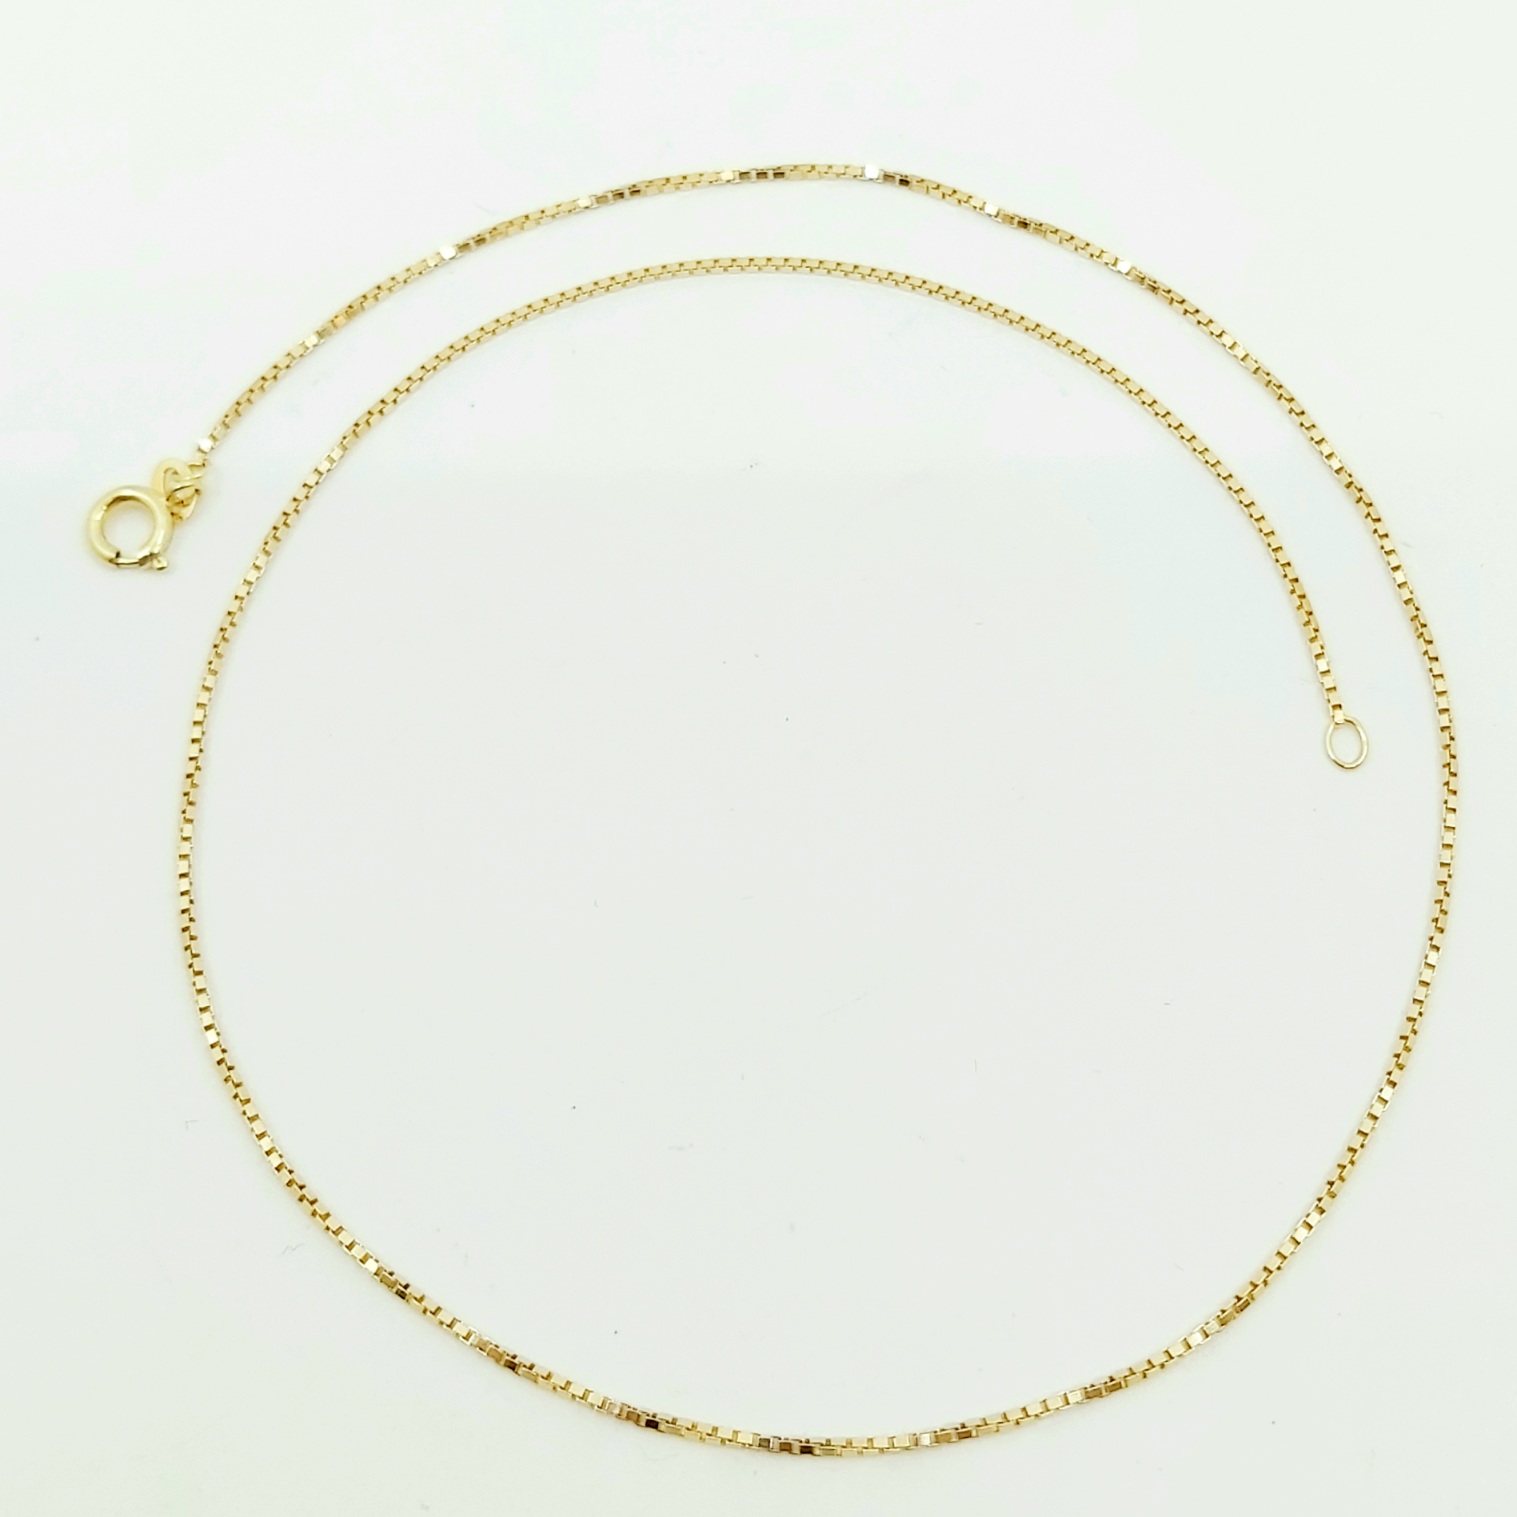 1 Halskette 585/- Länge: 38 cm, 2,45 g